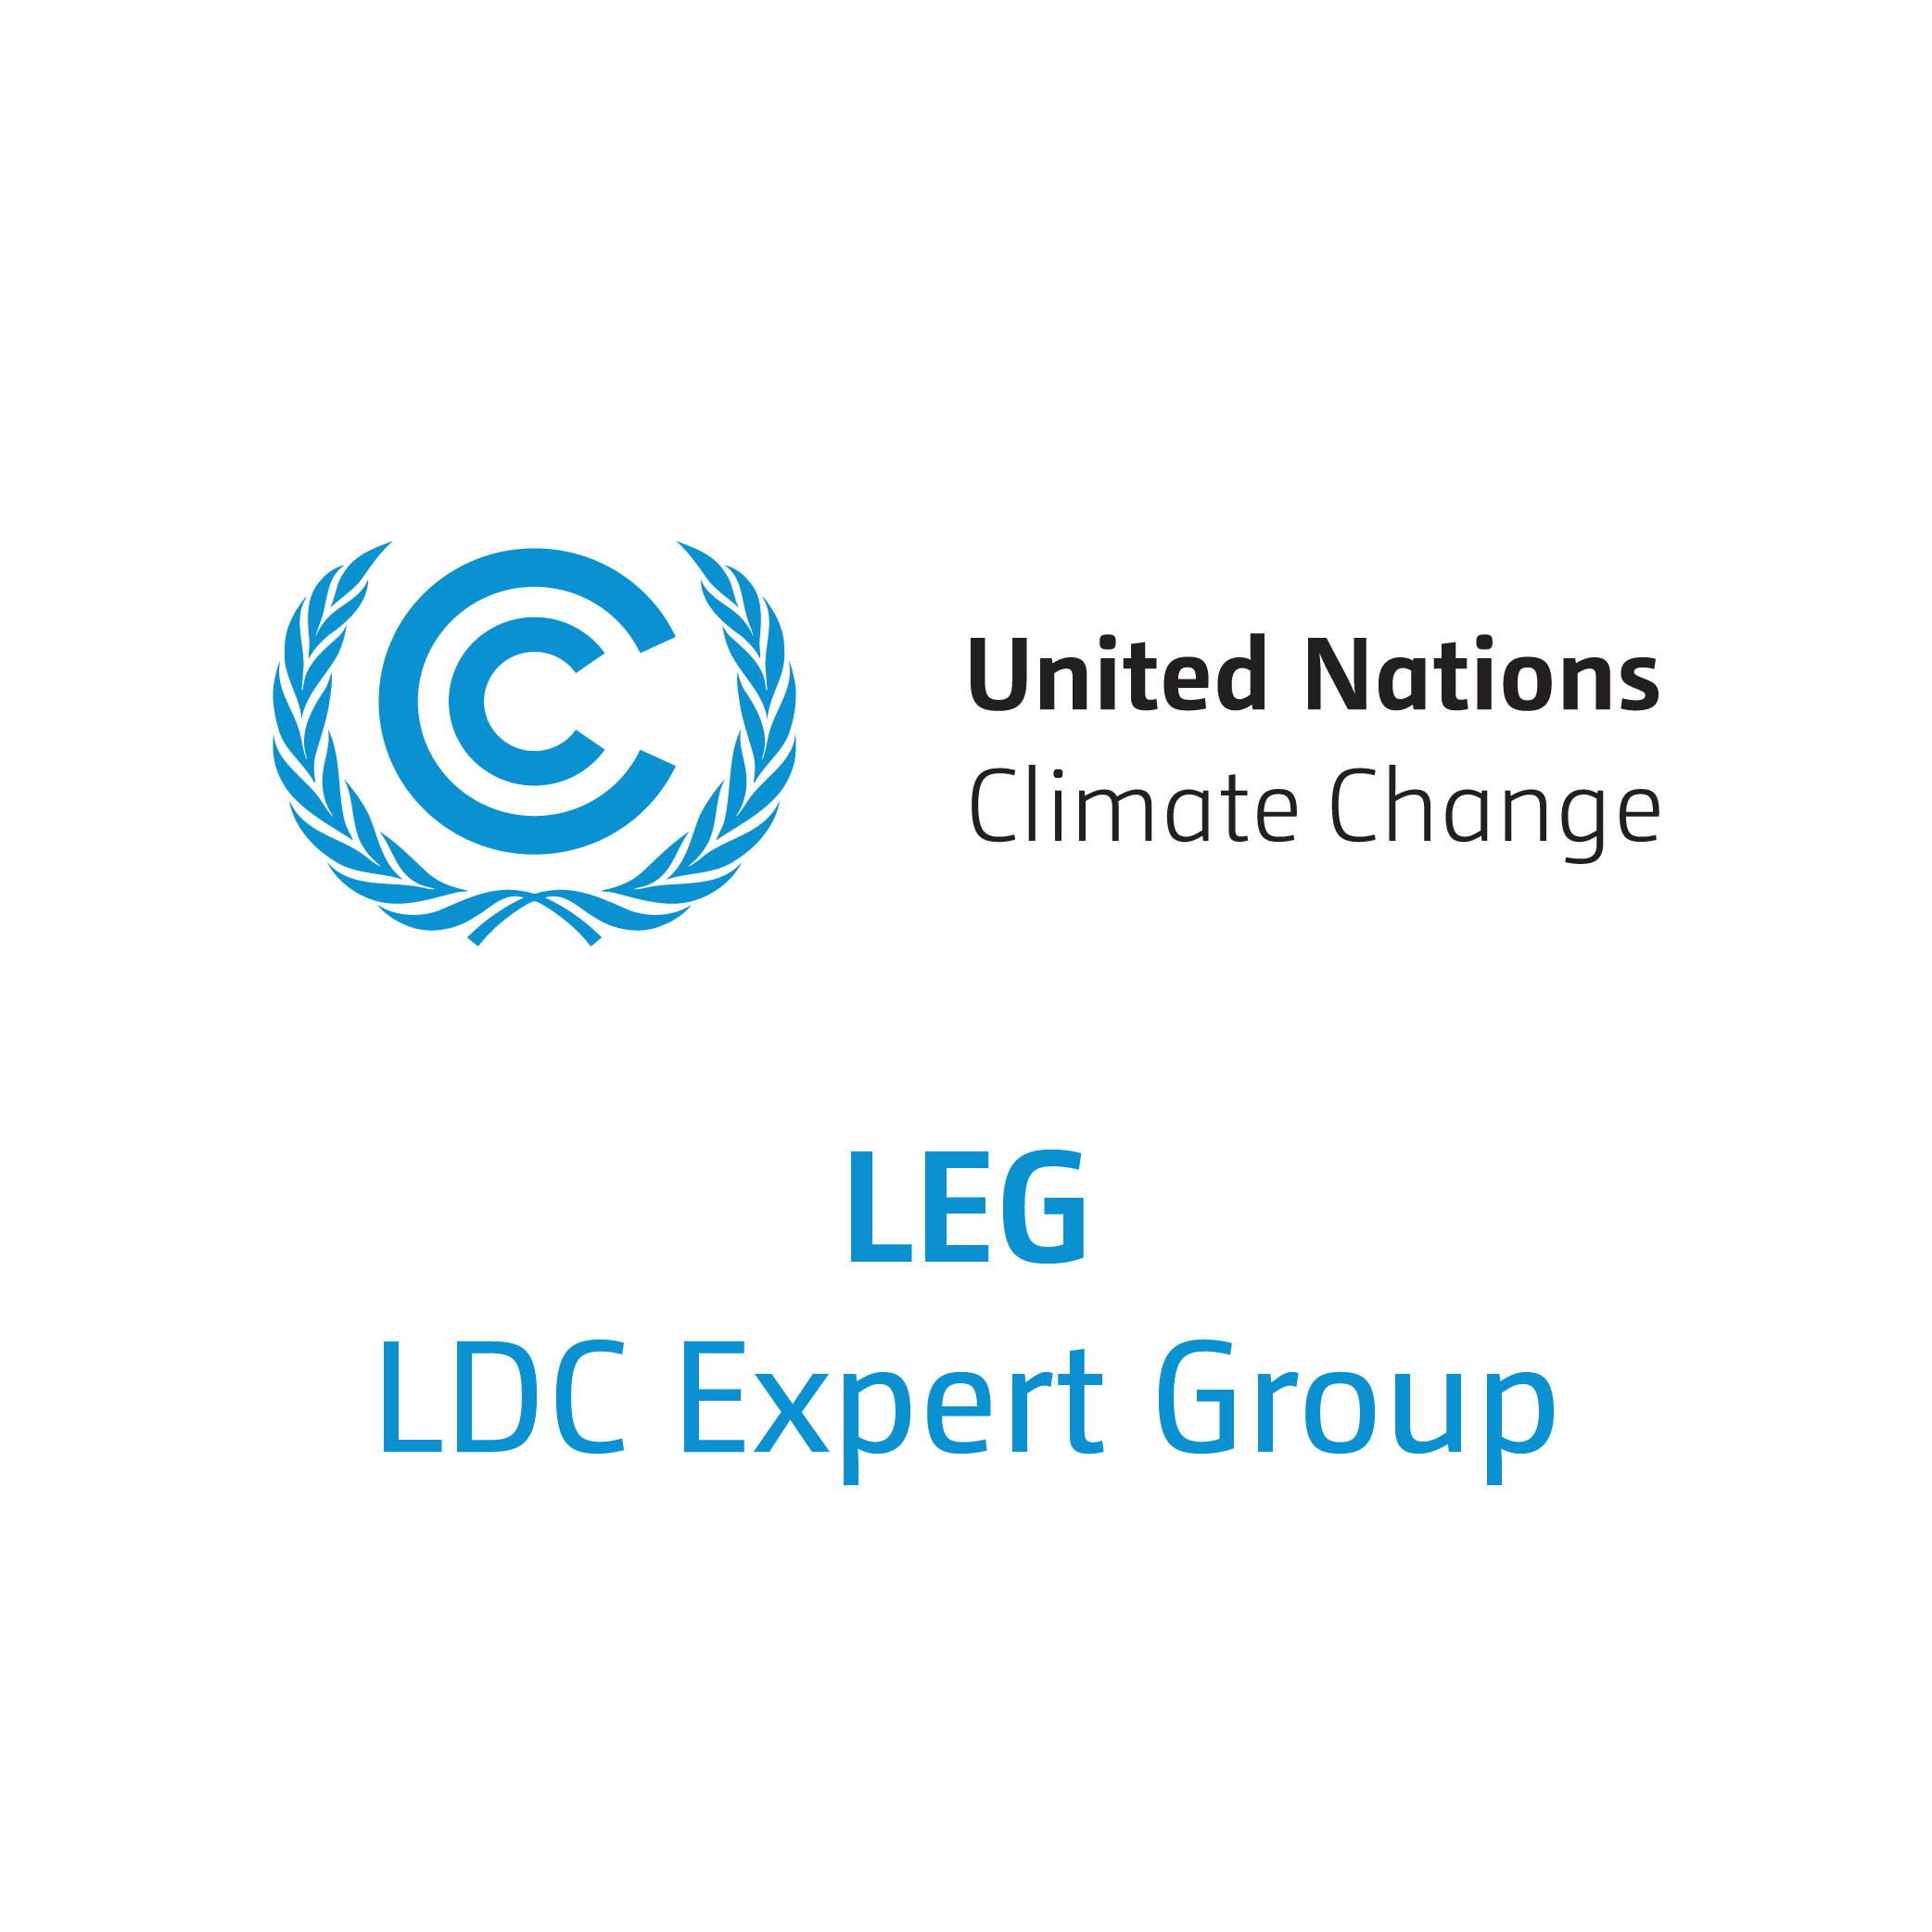 LDC Expert Group